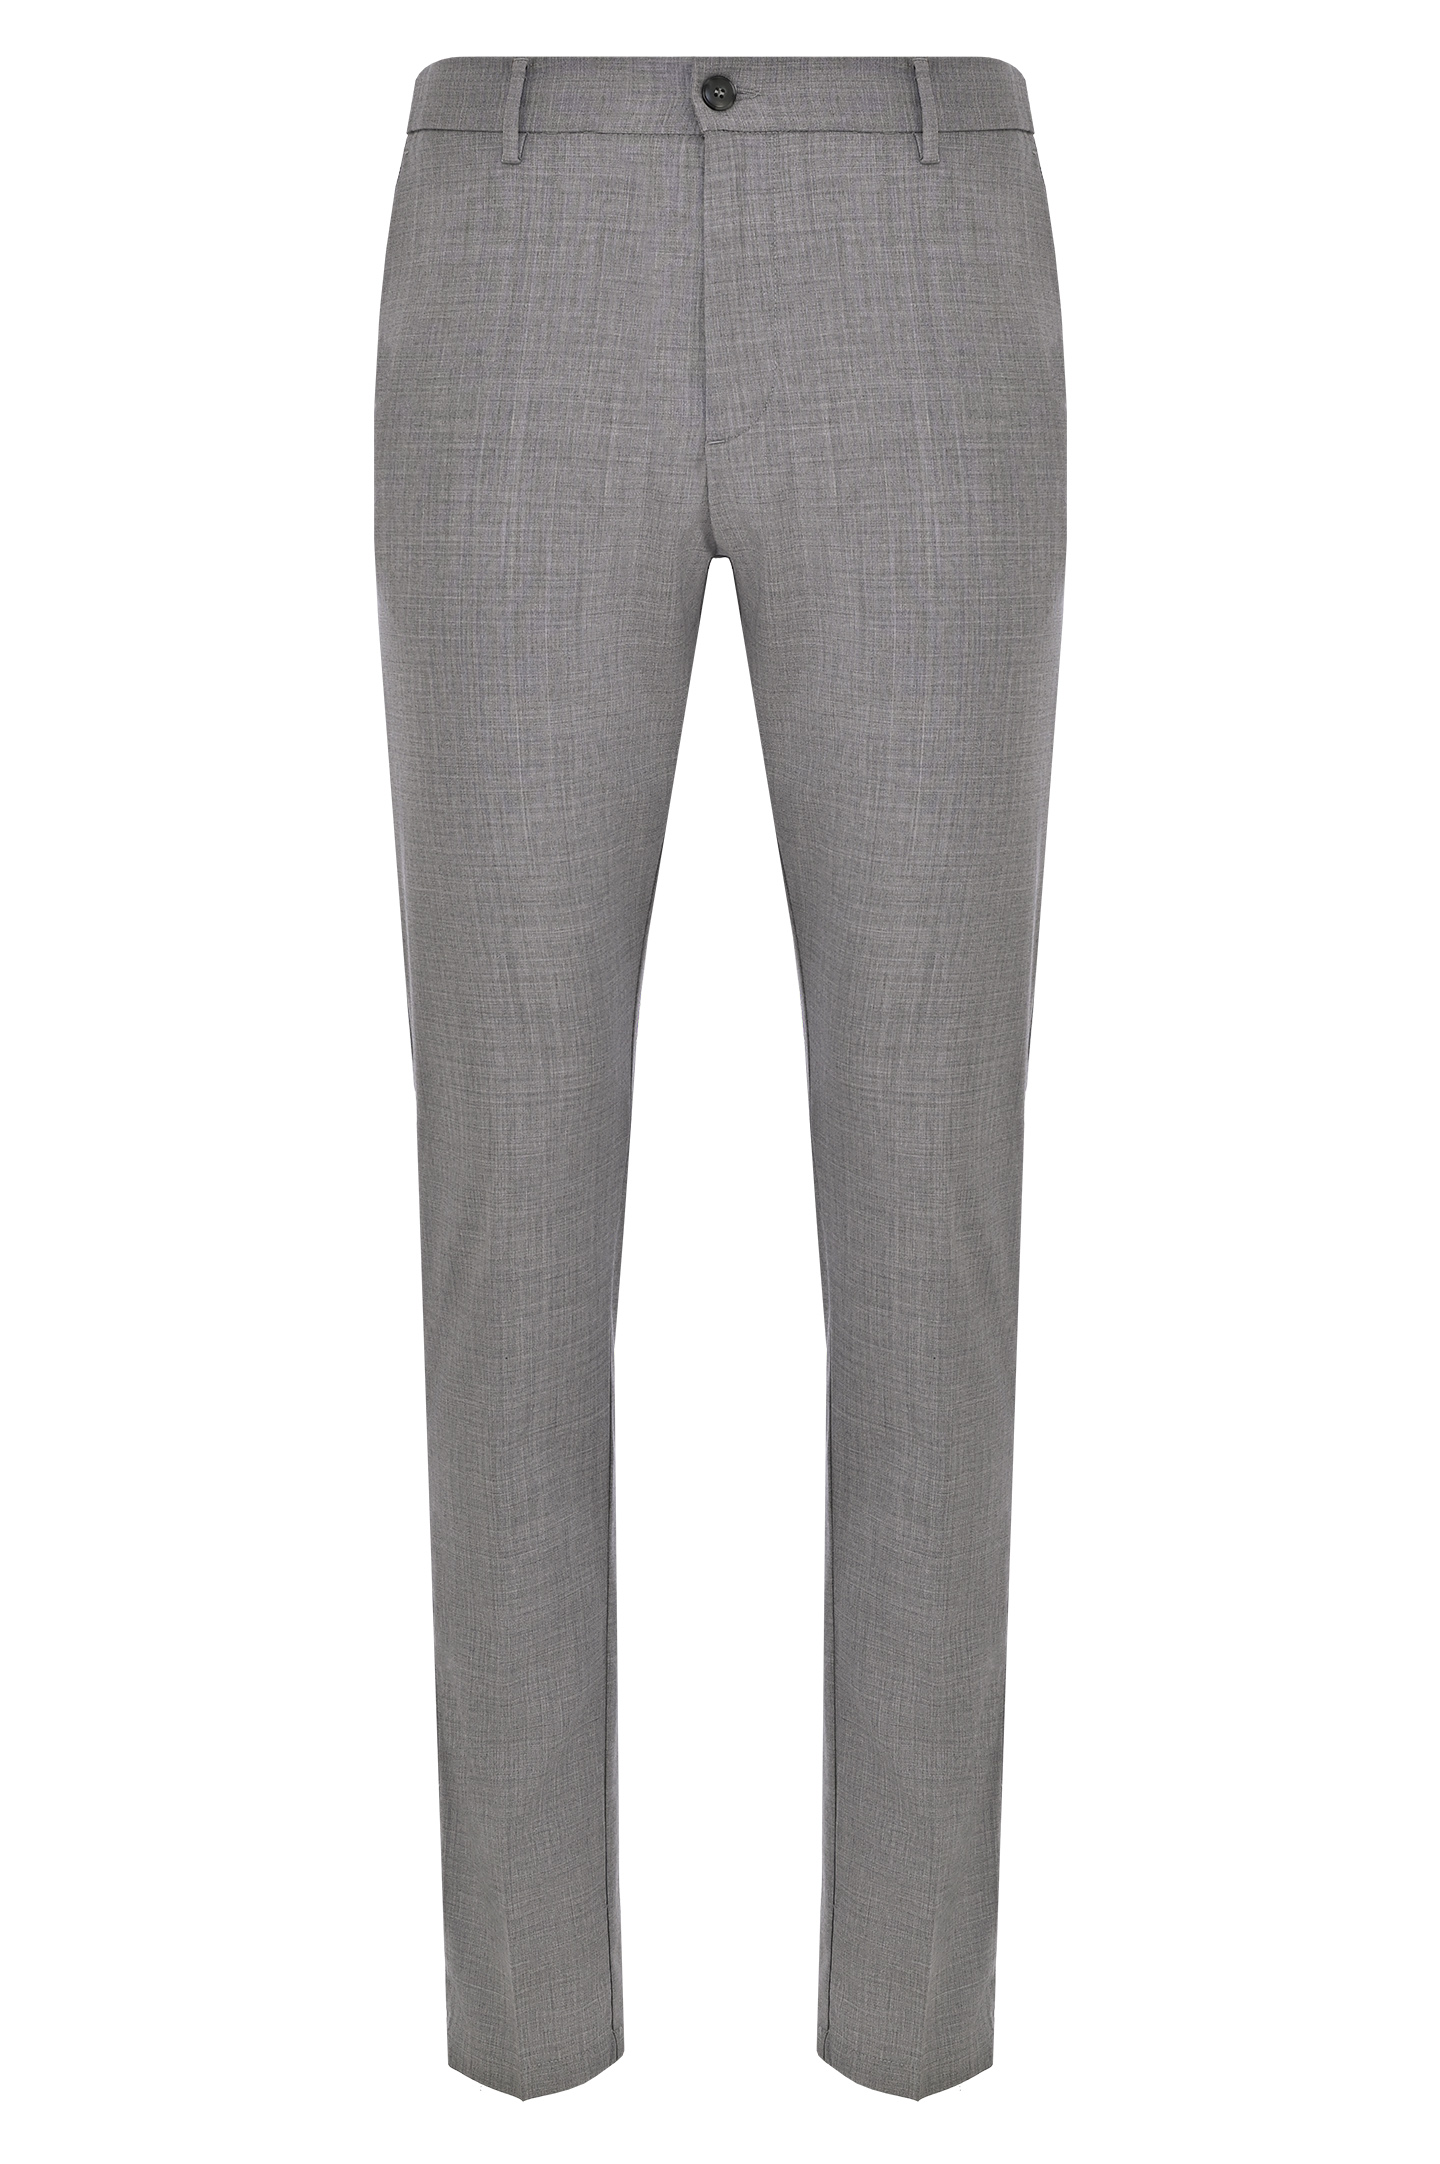 Классические шерстяные брюки CANALI PR01197 91678/-R, цвет: Серый, Мужской